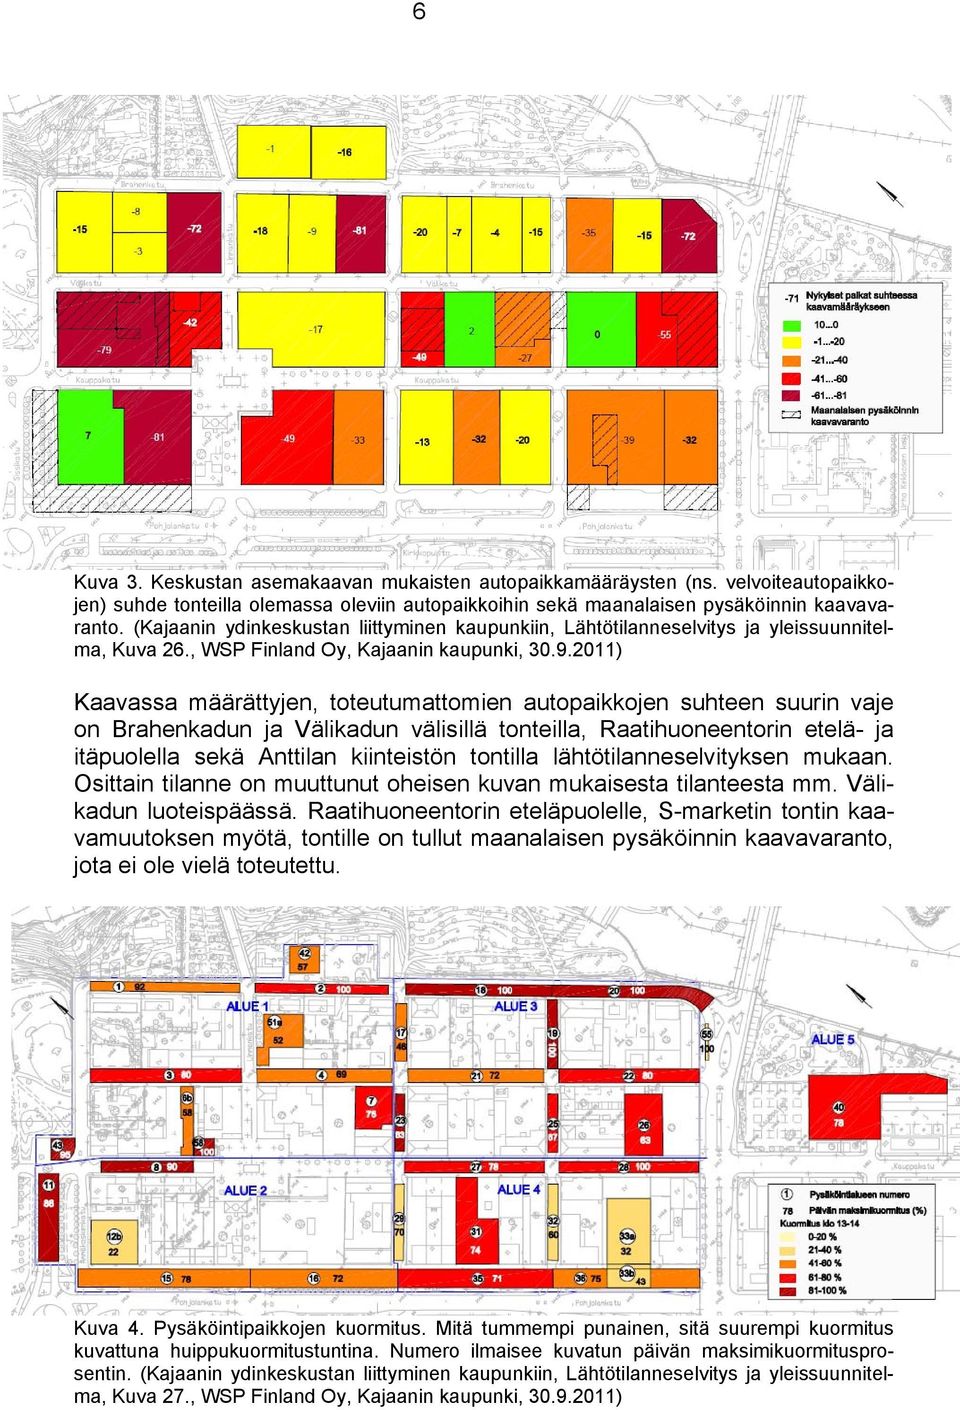 .0) Kaavassa määrättyjen, toteutumattomien autopaikkojen suhteen suurin vaje on Brahenkadun ja Välikadun välisillä tonteilla, Raatihuoneentorin etelä- ja itäpuolella sekä Anttilan kiinteistön